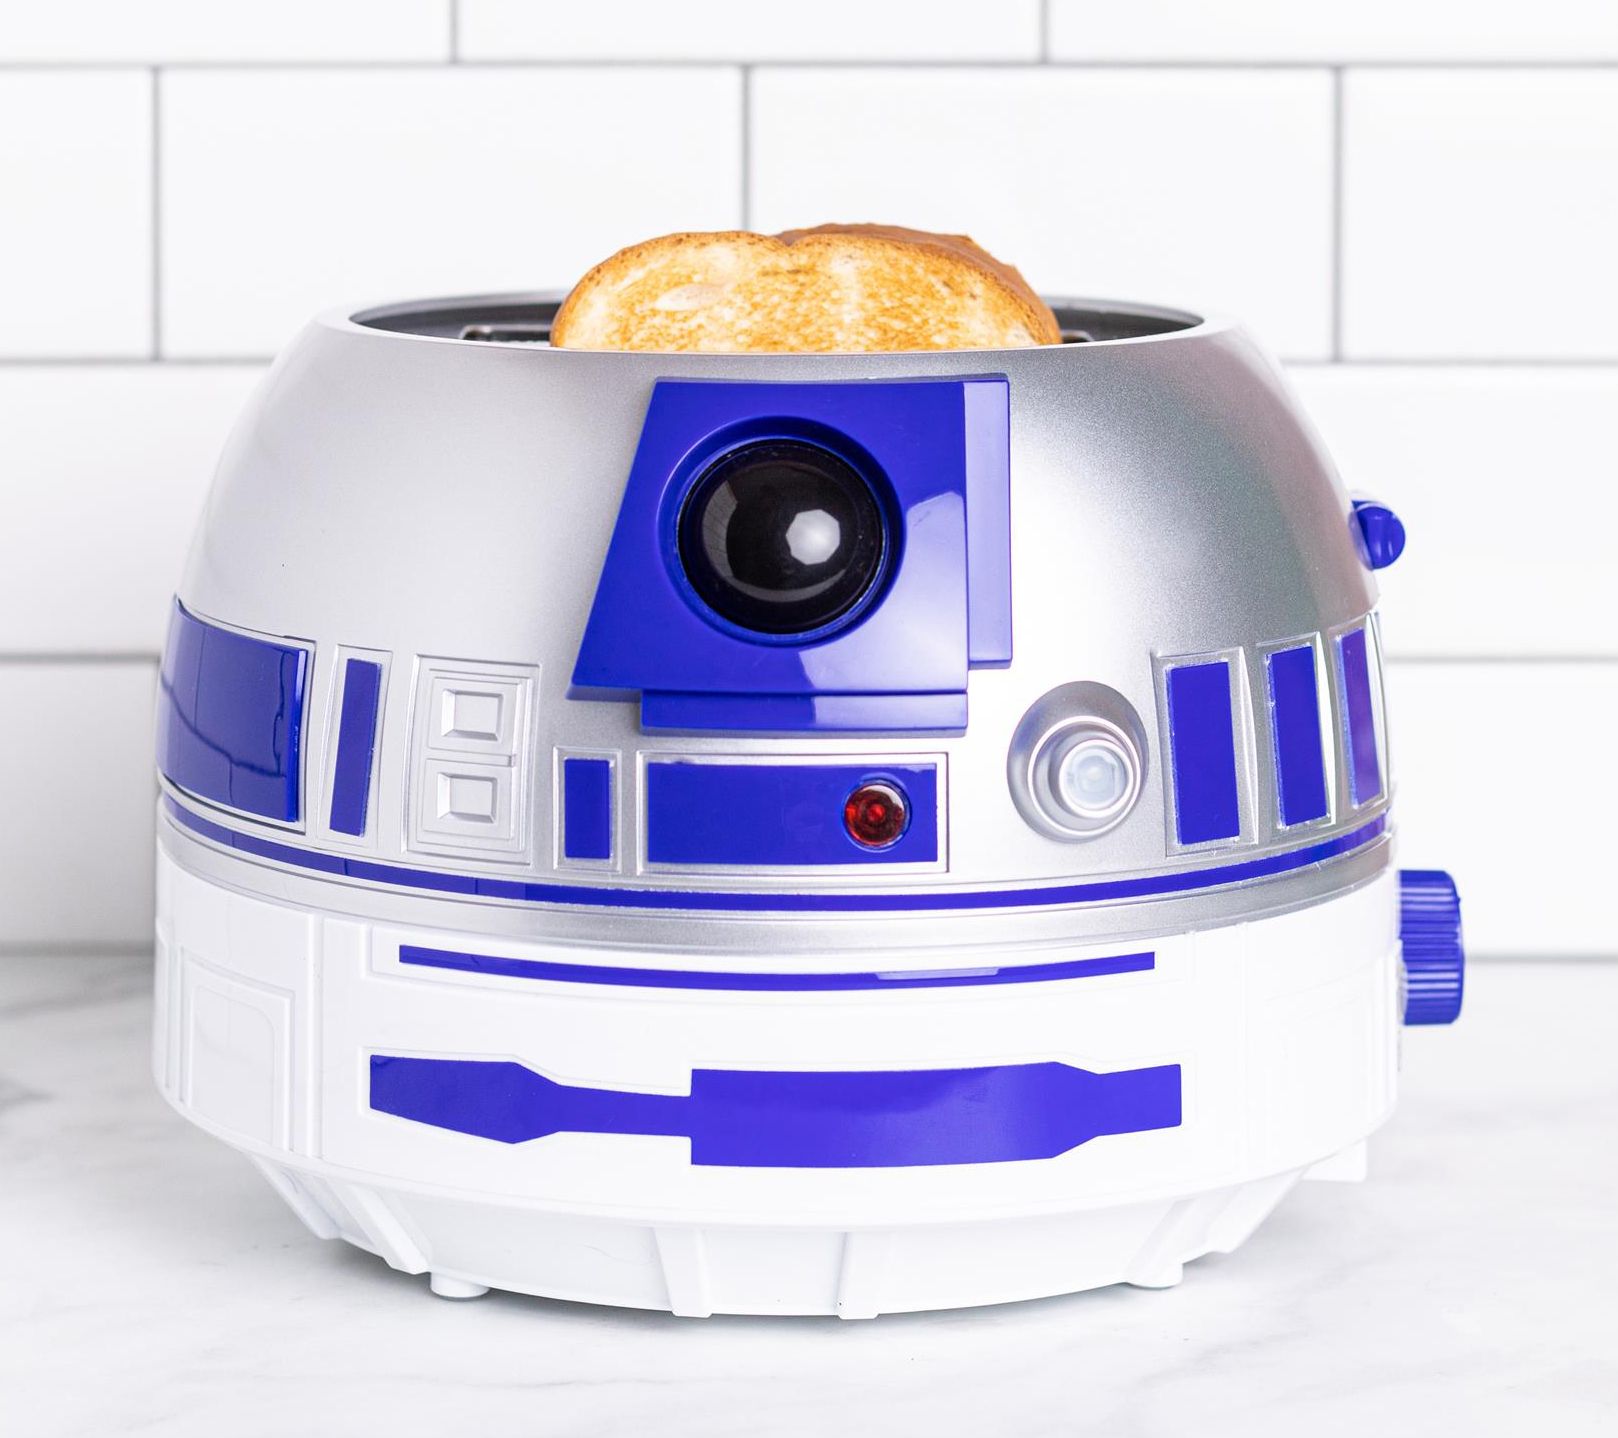 Uncanny Brands - Star Wars R2d2 Popcorn Maker : Target